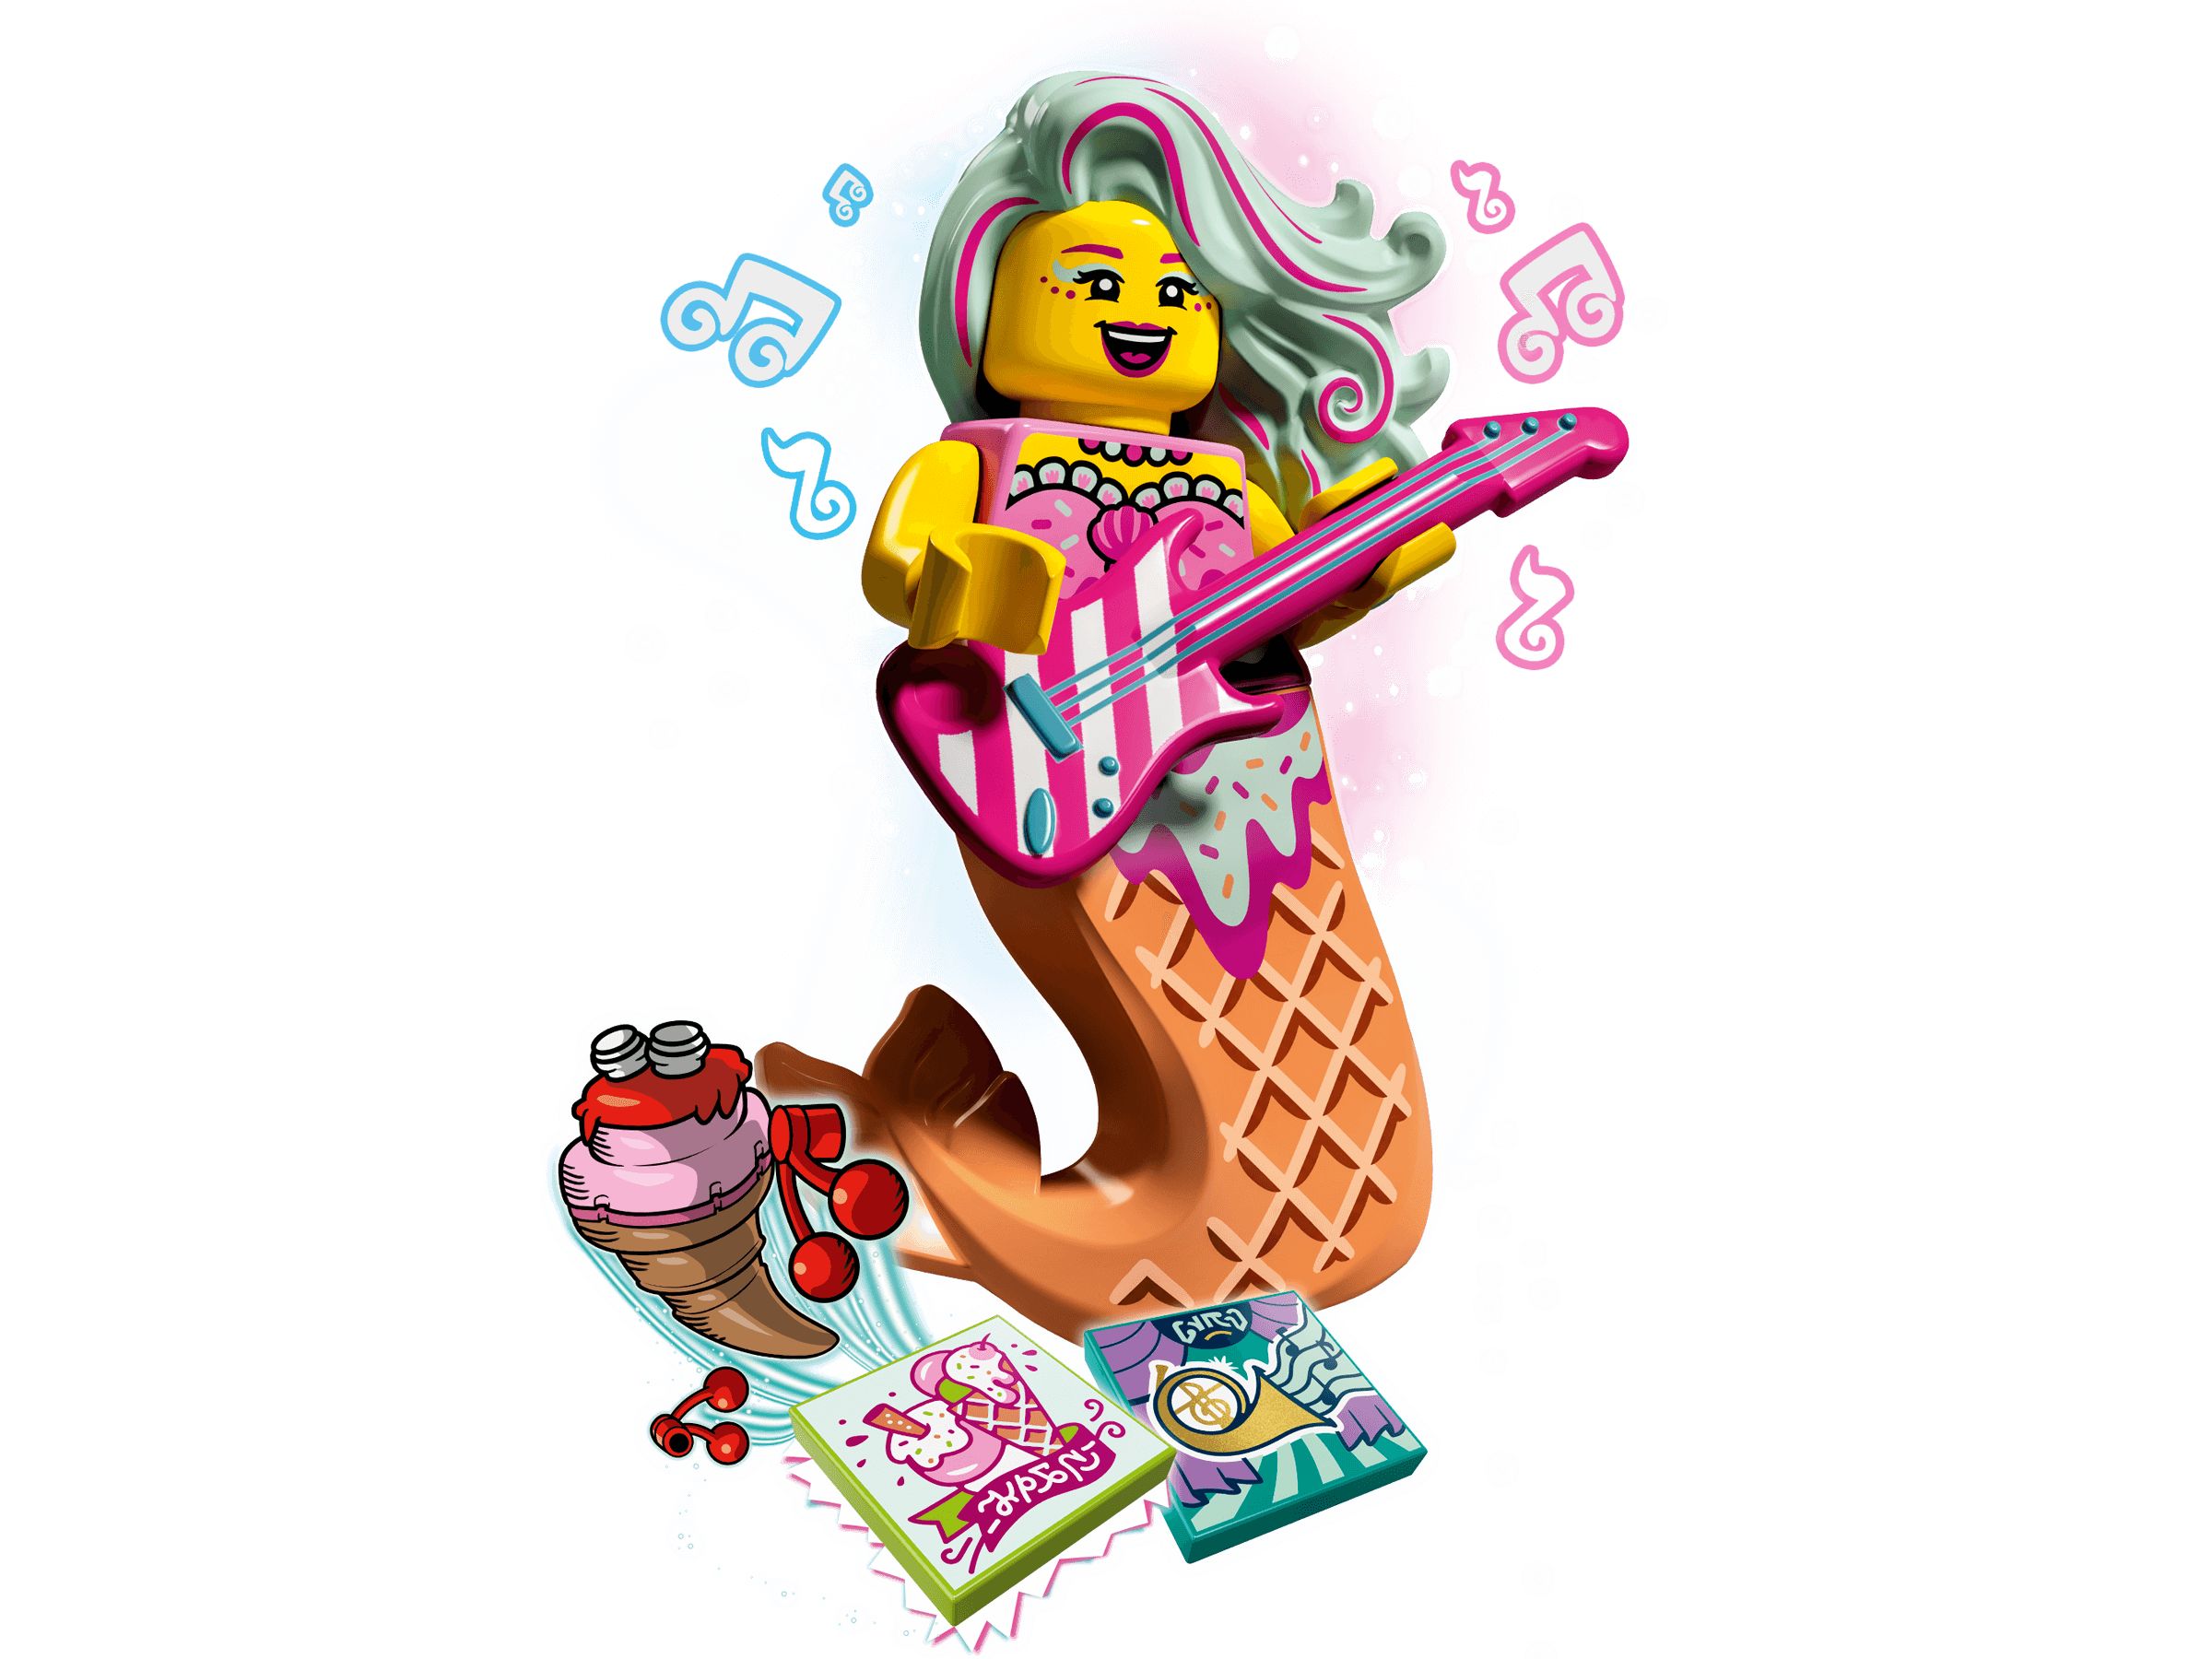 LEGO Vidiyo 43102 Candy Mermaid BeatBox LEGO_43102_alt2.jpg